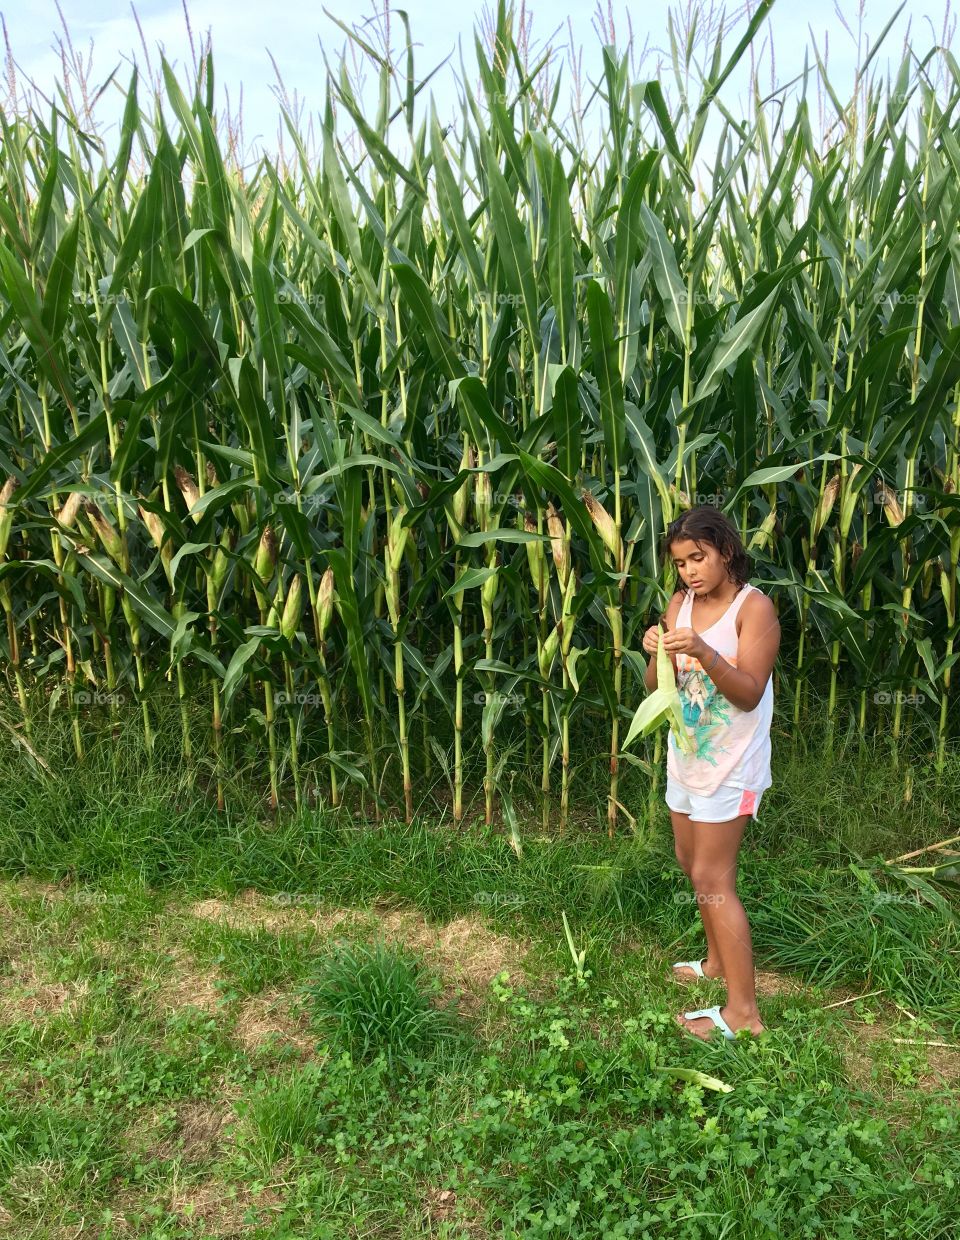 Corn picking